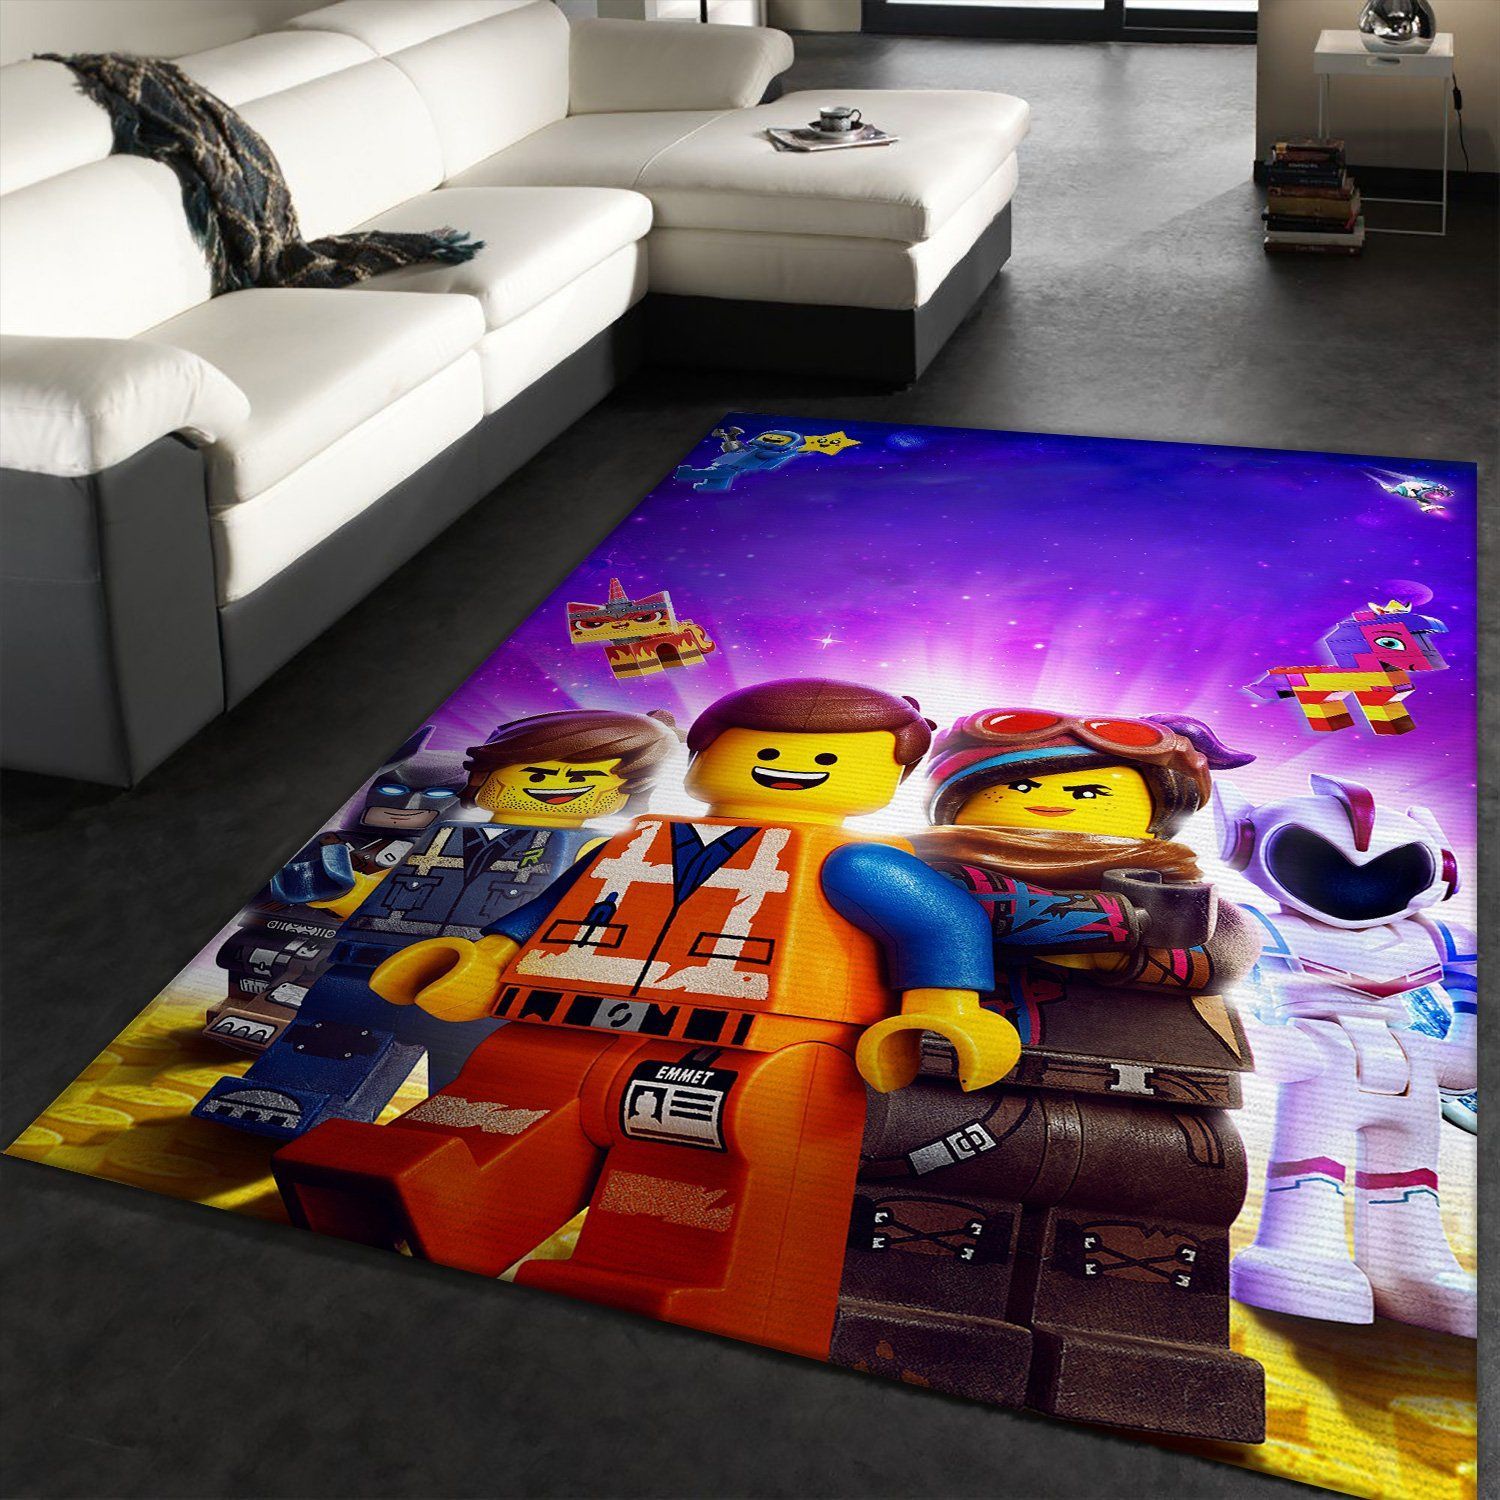 Lego Rug for Kids Room, Lego Carpet for Kids, Gift for Kids, Kids